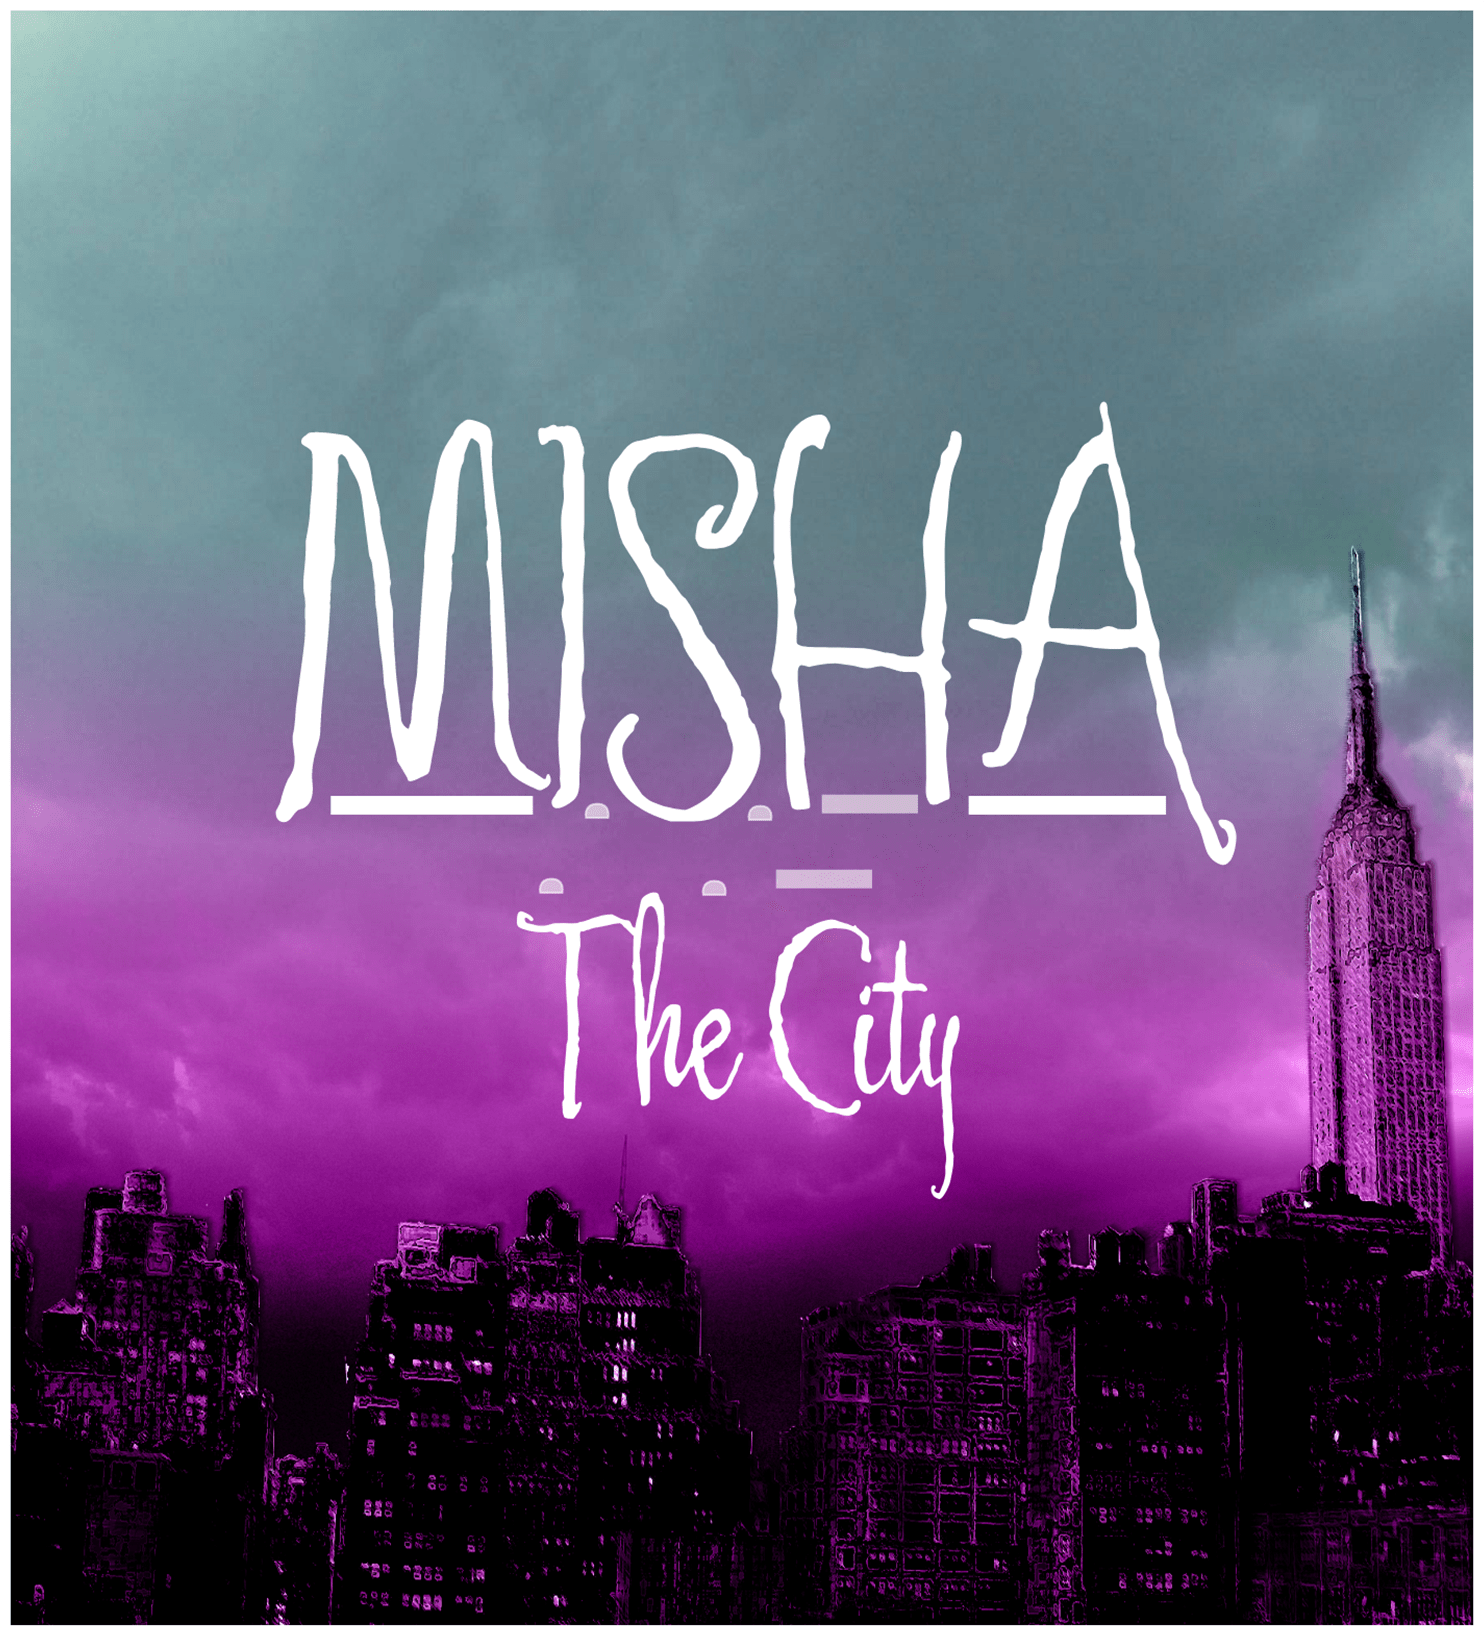 Misha The City Image